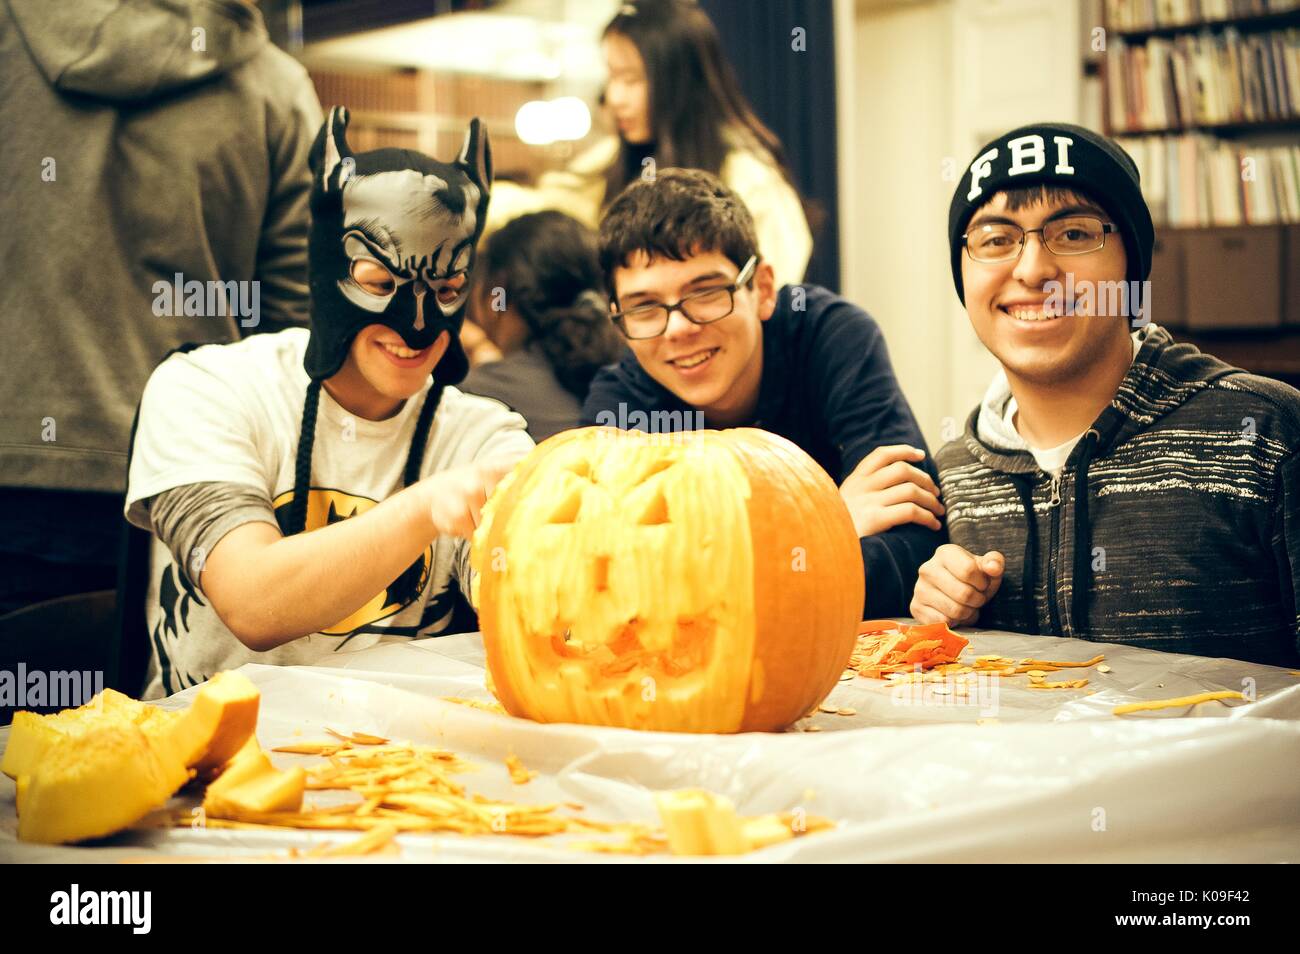 Drei männlichen Studenten an einem Tisch sitzt ein Kürbis schnitzen, die ganz linke Student trägt eine Maske, die Mitte Student ohne auffällige Kostüm, die am weitesten rechts stehenden Student trägt eine Mütze, die lautet: 'FBI'; alle mit lächelnden Gesichtsausdruck, Halloween in Peabody, 31. Oktober 2015. Mit freundlicher Genehmigung von Eric Chen. Stockfoto